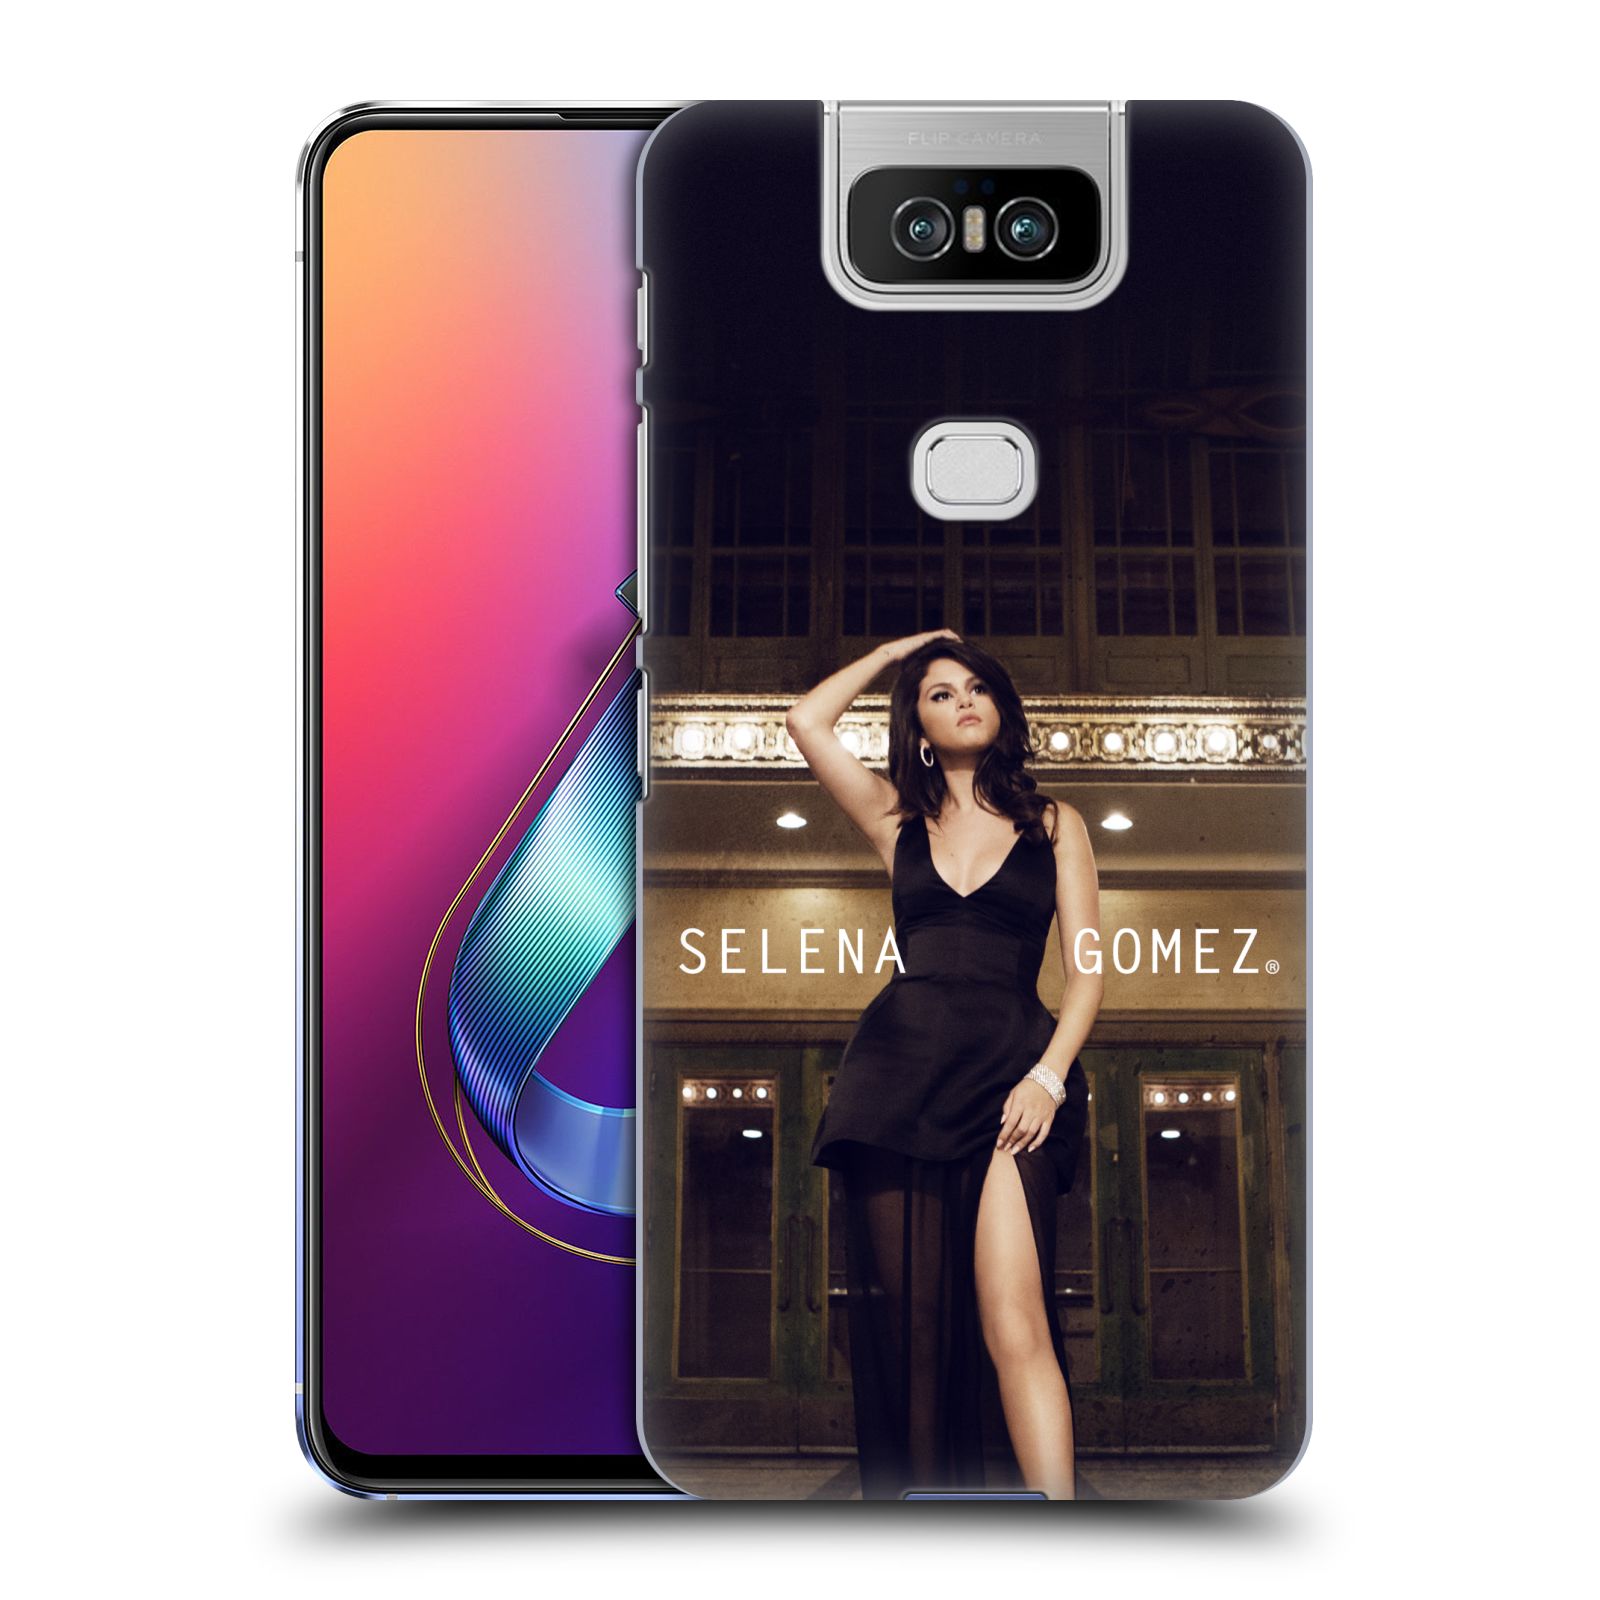 Pouzdro na mobil Asus Zenfone 6 ZS630KL - HEAD CASE - Zpěvačka Selena Gomez foto Revival Same Old Love